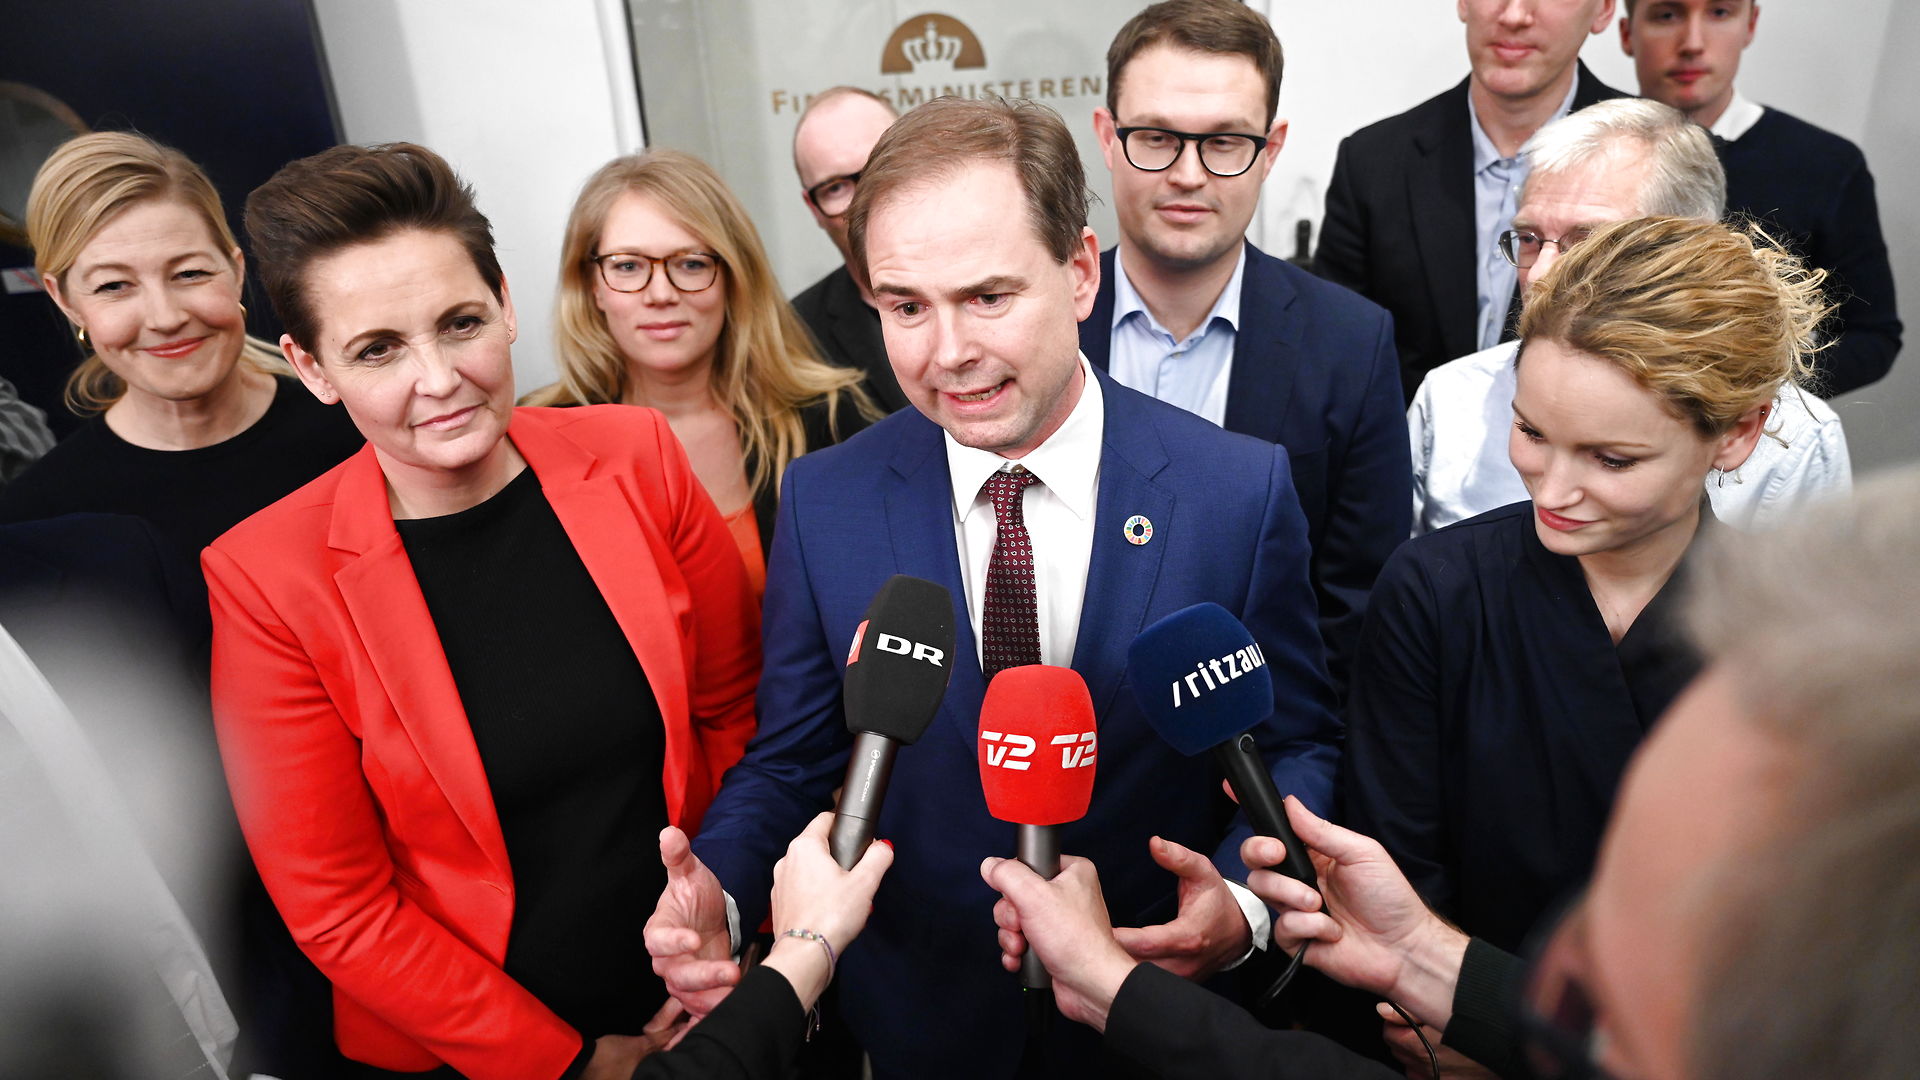 Morten Dahlin: Finansloven cementerer desværre det, Venstre advarede mod i valgkampen: En rød regering betyder højere sociale ydelser til arbejdsløse indvandrere og flygtninge